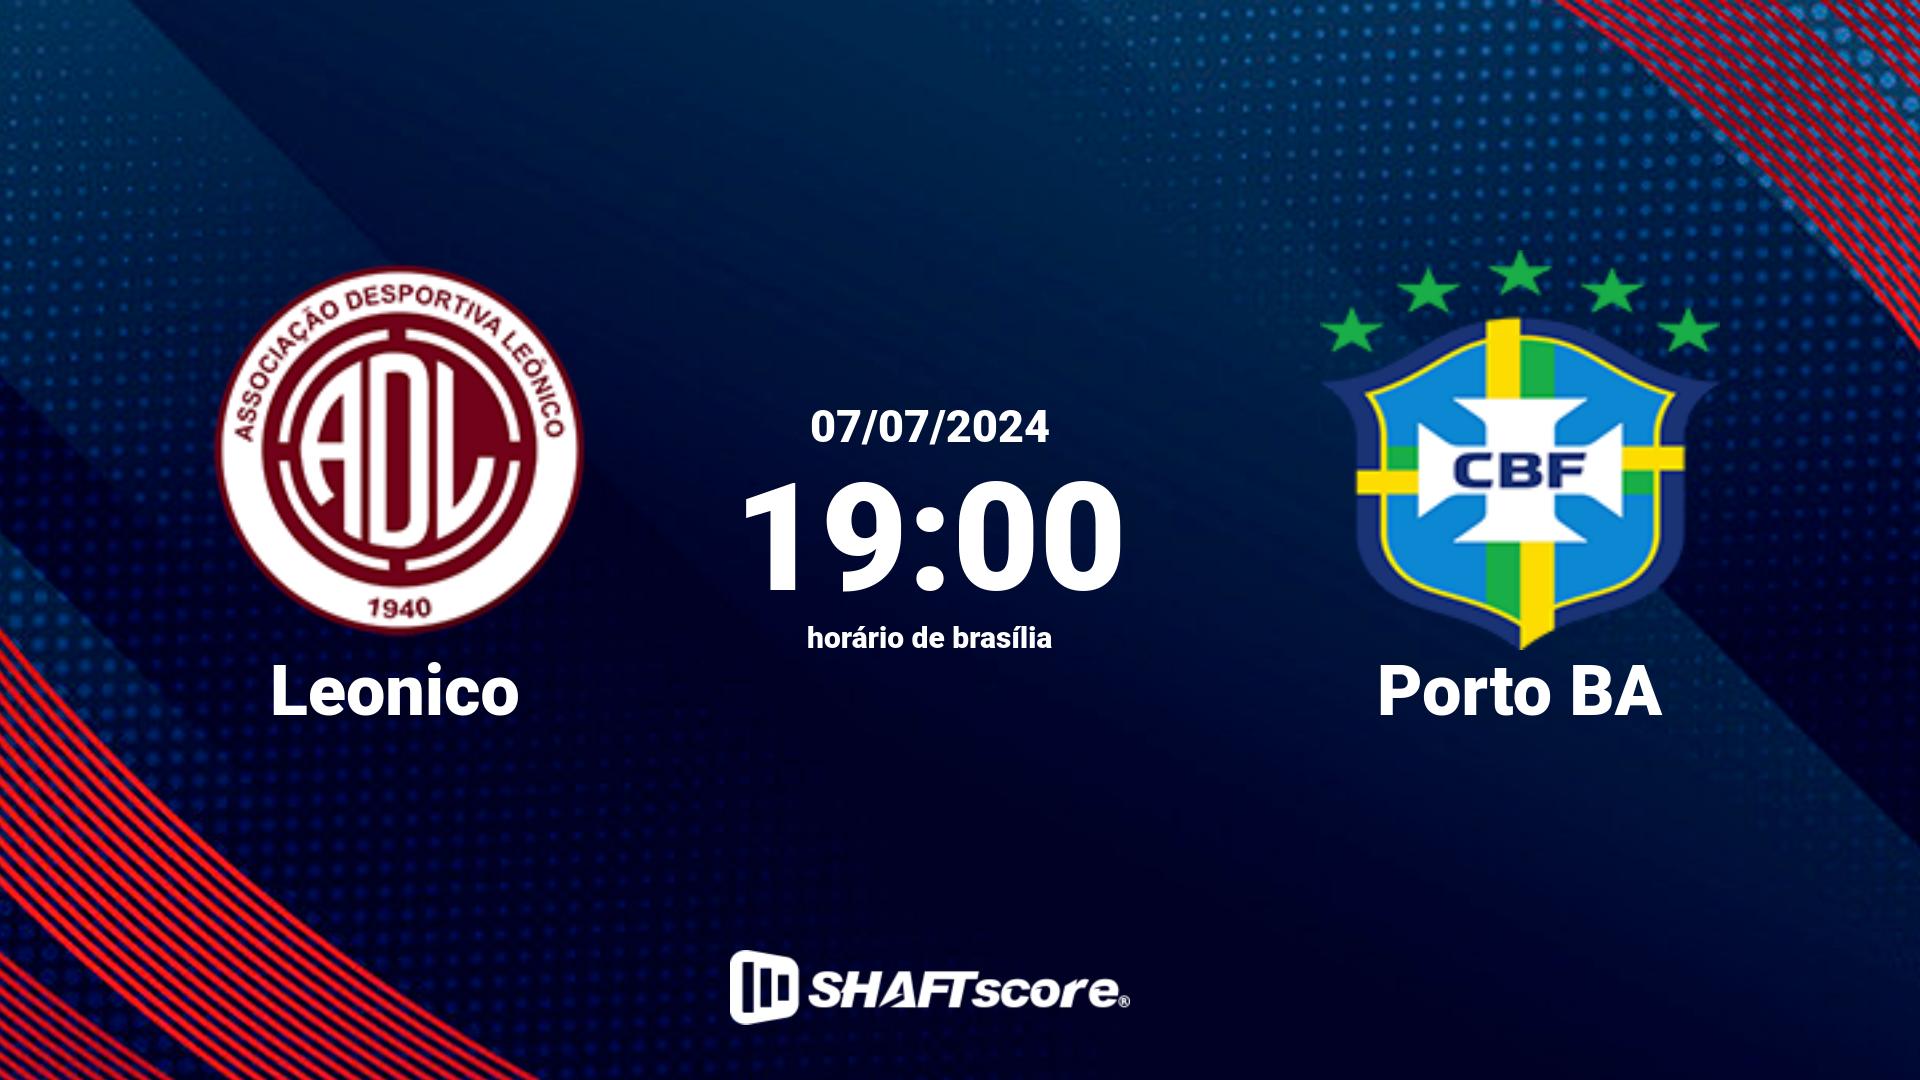 Estatísticas do jogo Leonico vs Porto BA 07.07 19:00